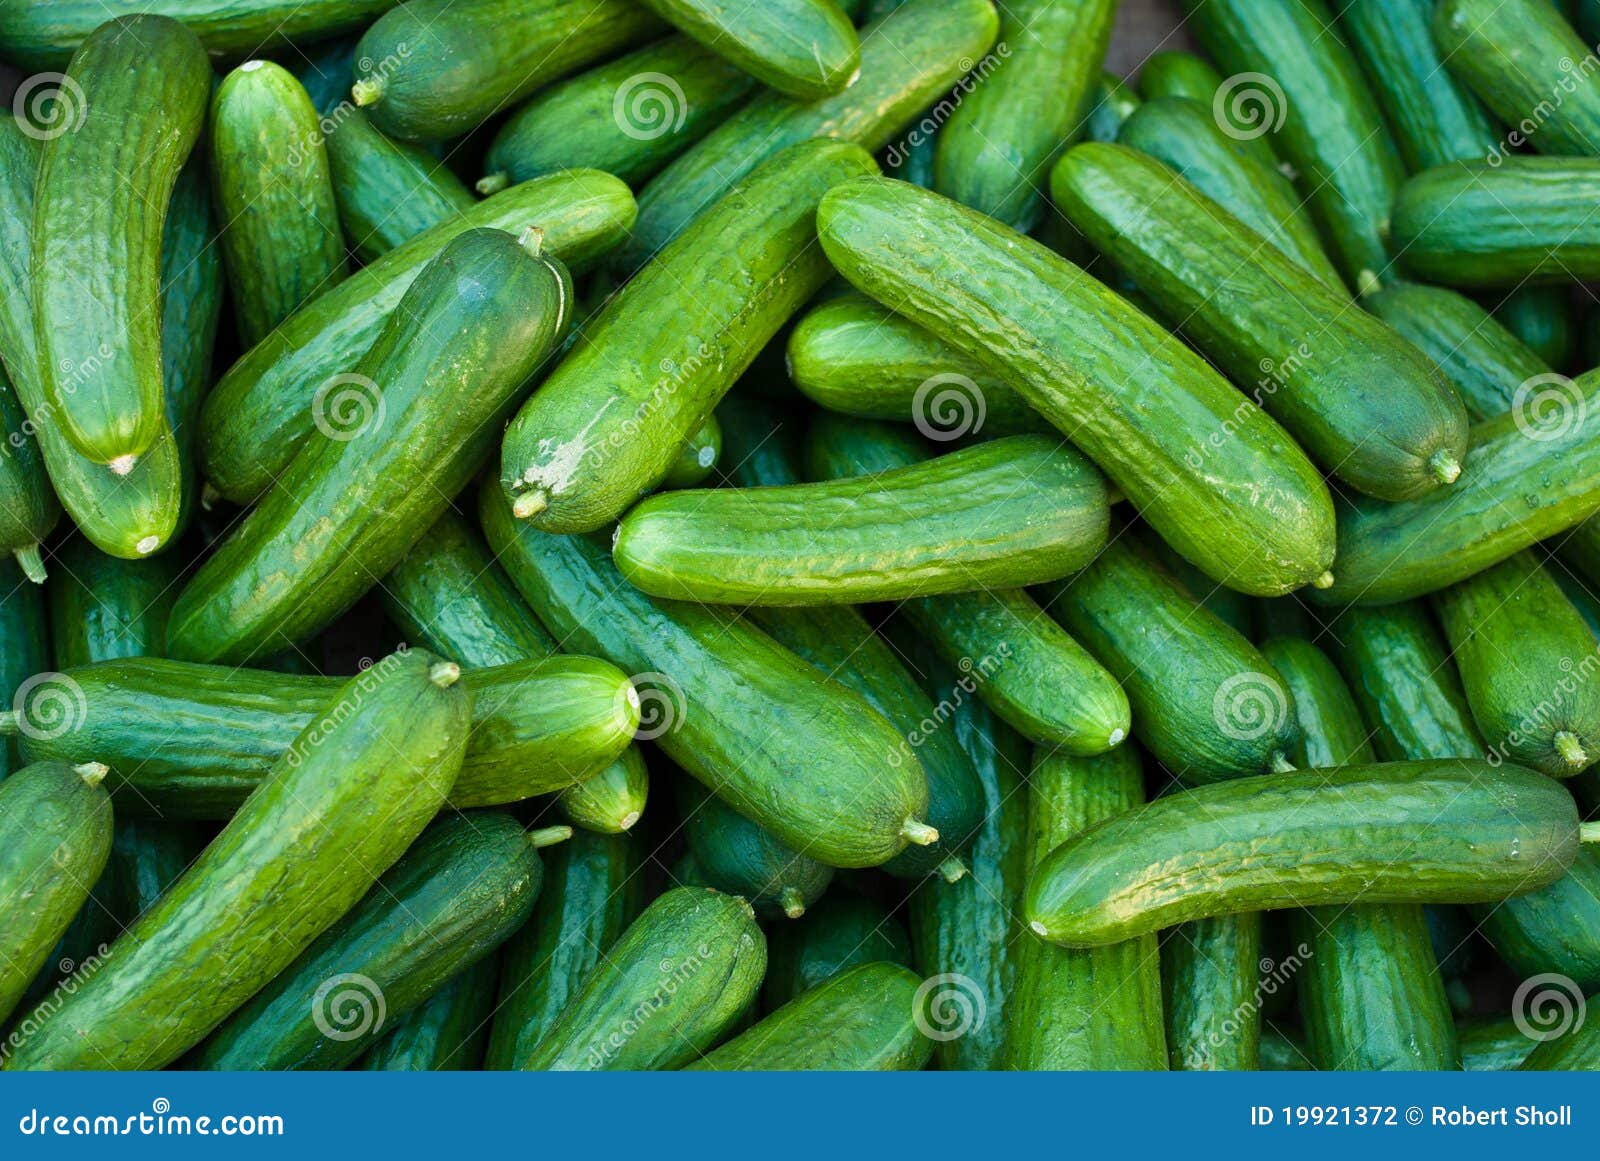 organic pickle cucumbers